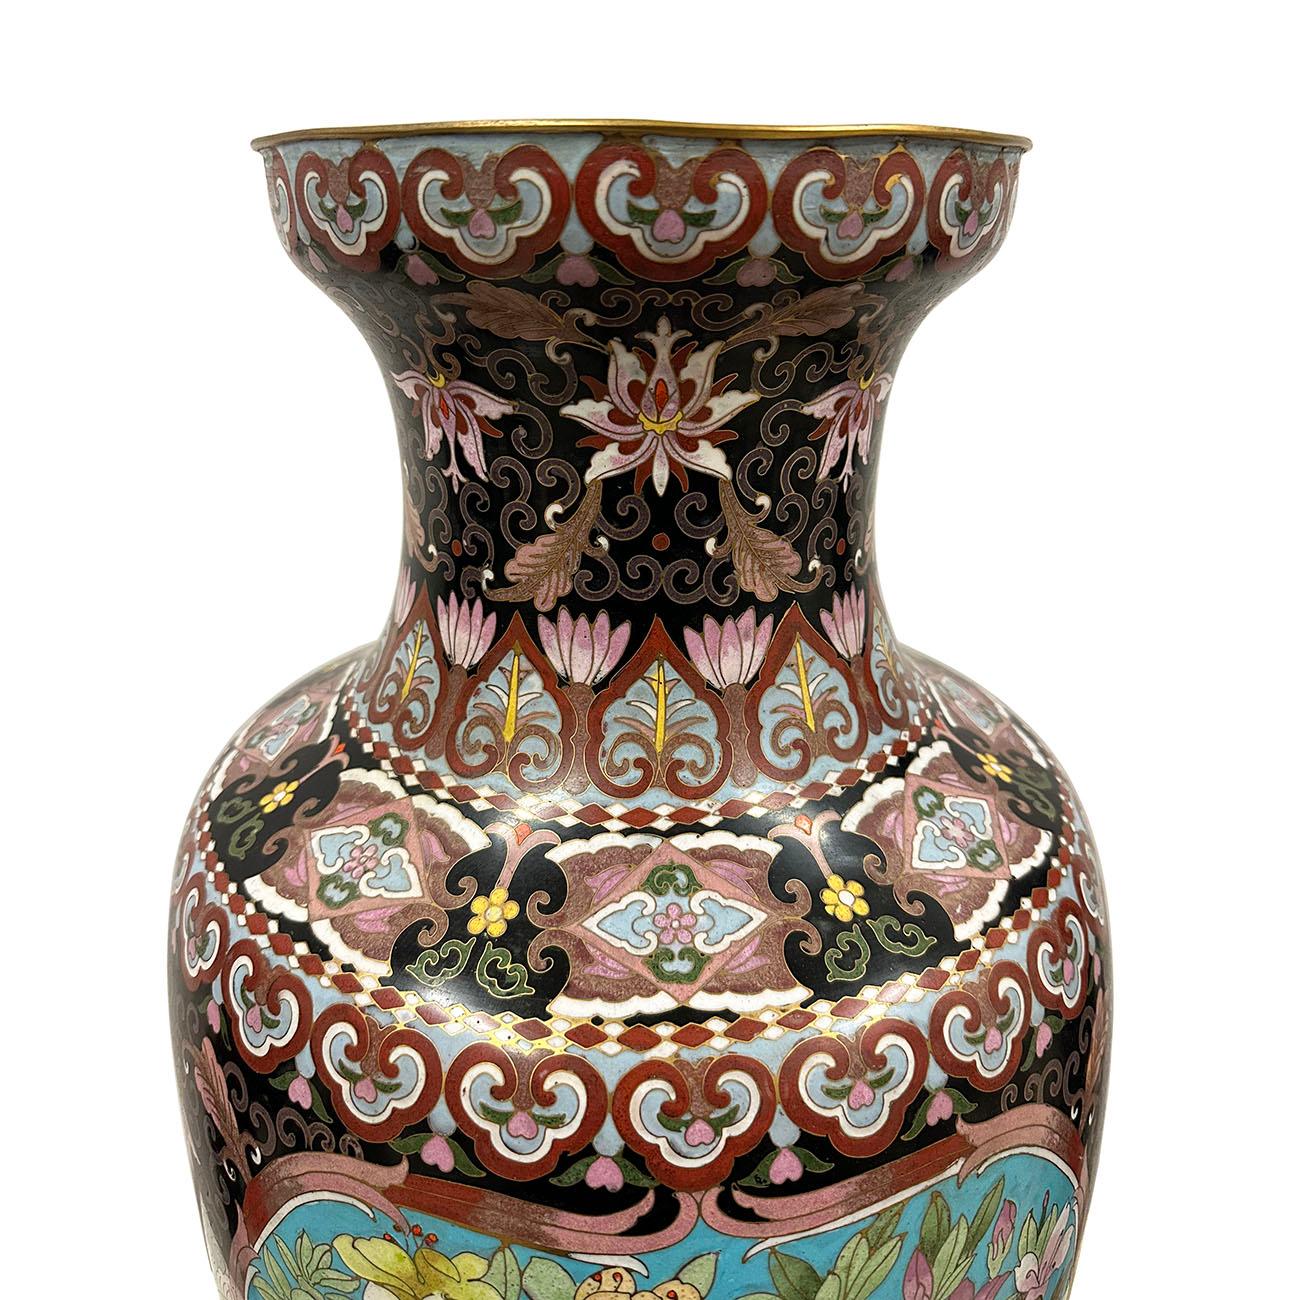 Ce vase chinois antique en cloisonné a été réalisé à la main en cuivre doré et en cloisonné. Il est orné de cloisonnages détaillés représentant des pivoines, des pies et des fleurs, ainsi que de nuages signifiant la santé, la chance et la richesse. 